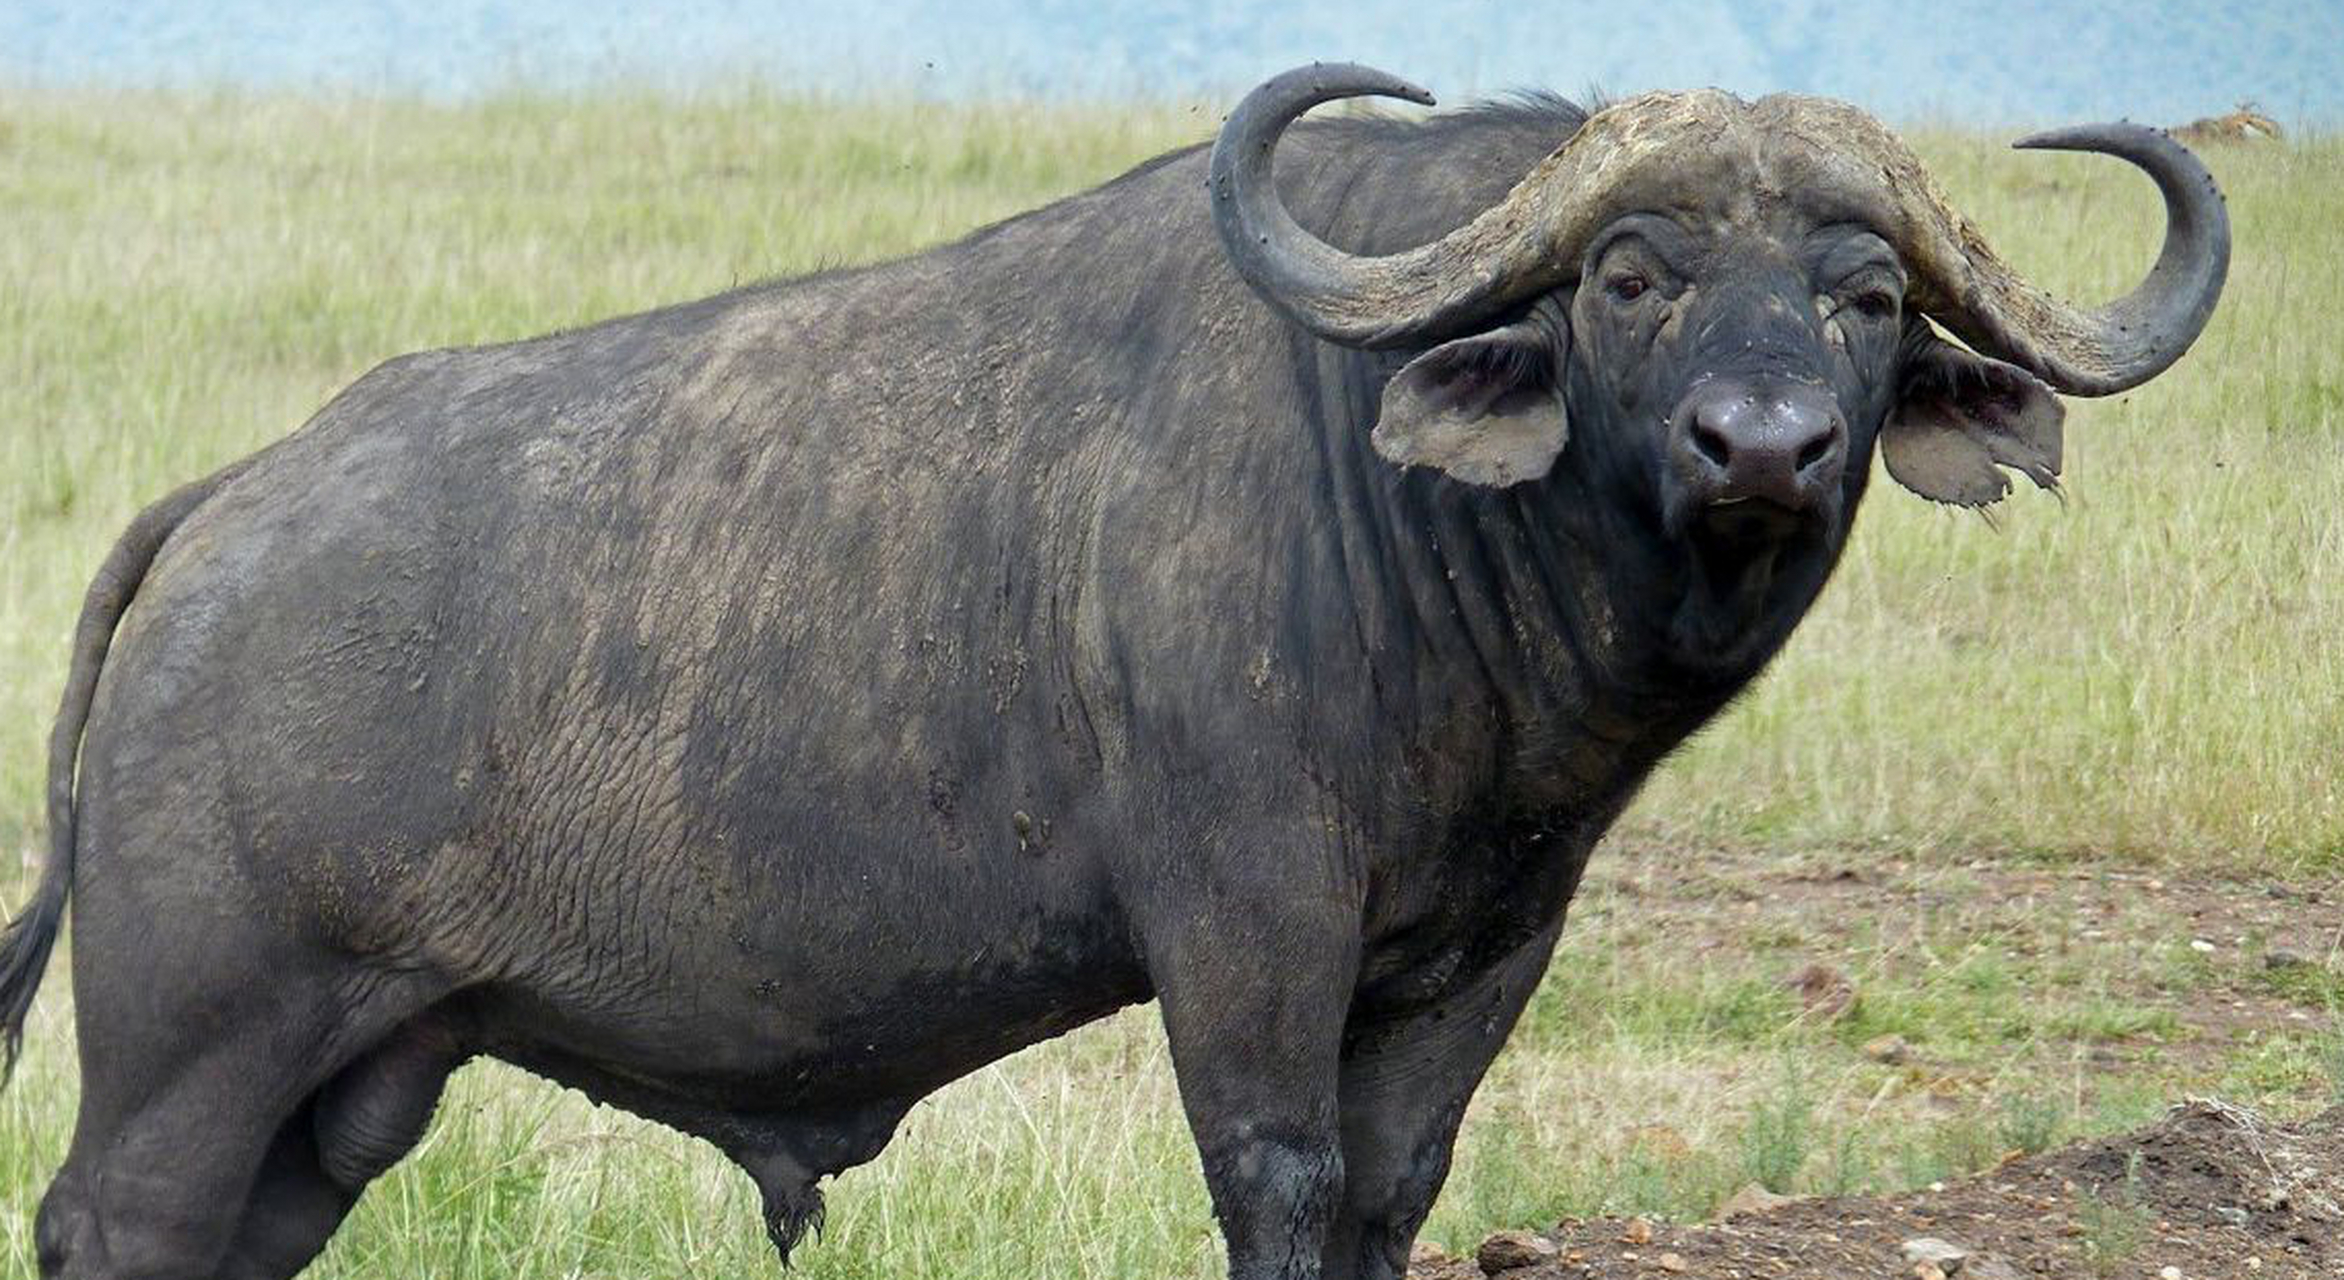 地球上最凶猛的动物 野牛(非洲水牛当代表)非洲水牛也称非洲野牛,是